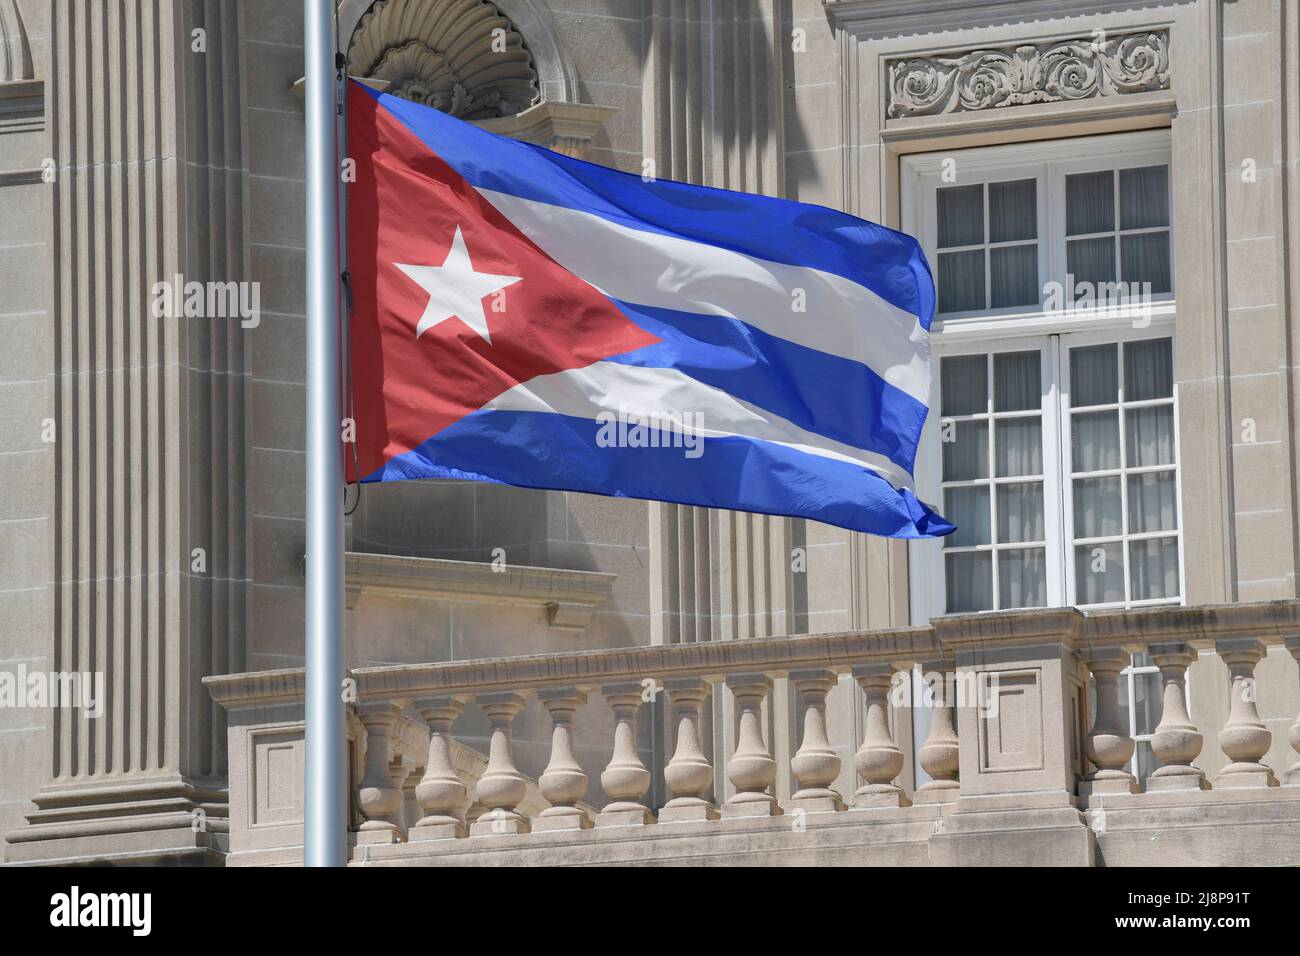 Un drapeau cubain est visible à l'ambassade de la République de Cuba à Washington DC. Les États-Unis ont décidé de ne pas inclure Cuba au prochain IX Sommet des Amériques, qui se tiendra du 6 au 10 juin 2022 à Los Angeles. Banque D'Images